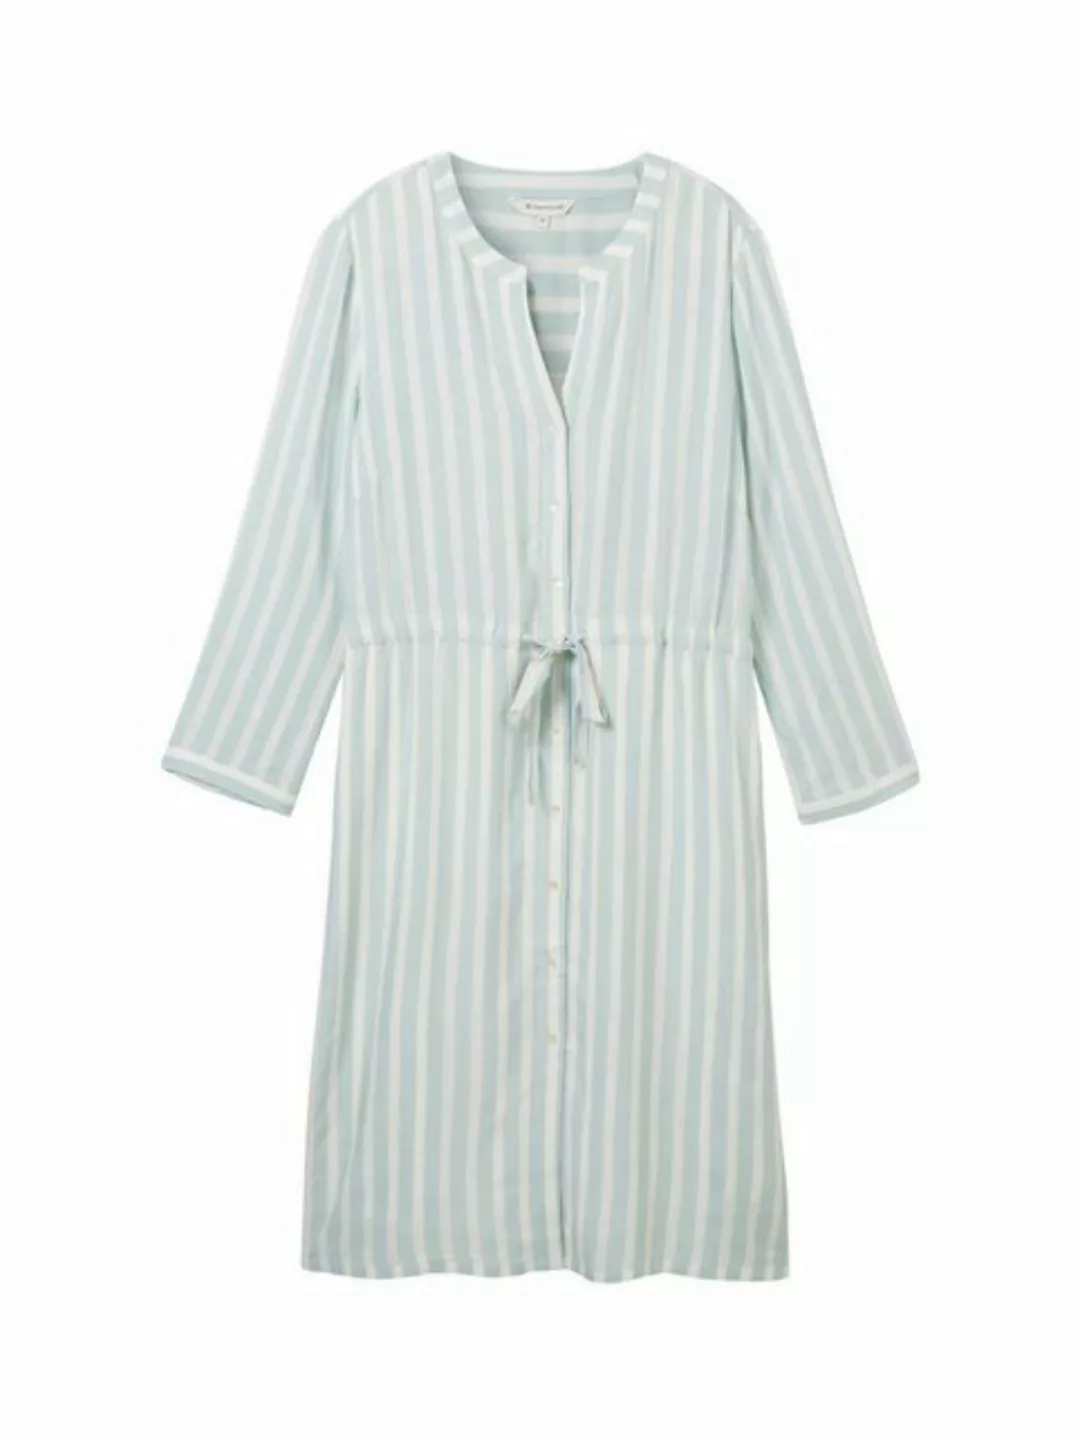 TOM TAILOR Sommerkleid striped dress, mint blue offwhite stripe günstig online kaufen